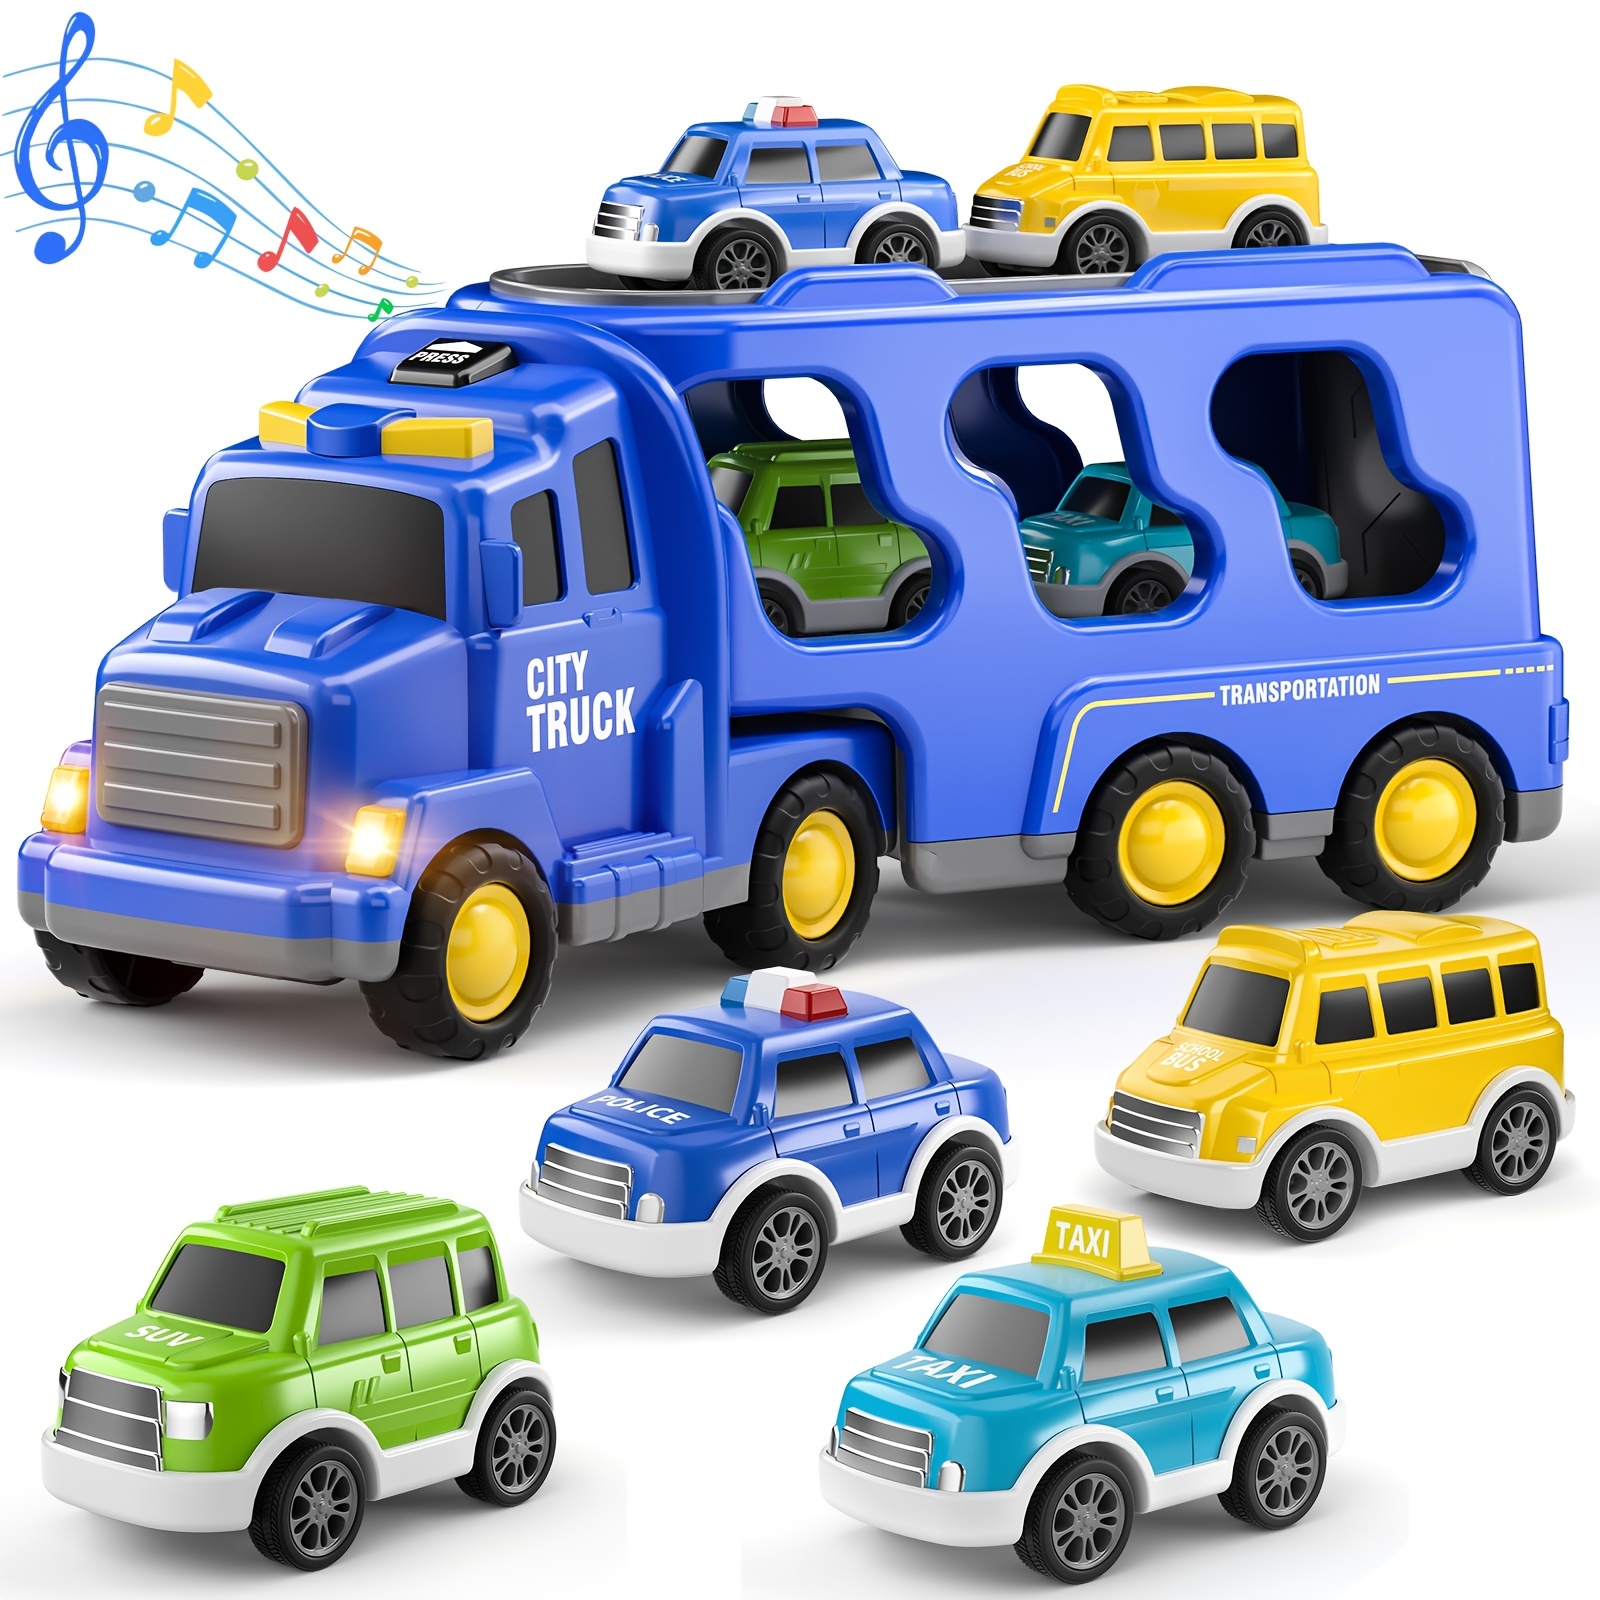 Lot de jouets camion et mini voitures Cars - 6 camions jouets enfants –